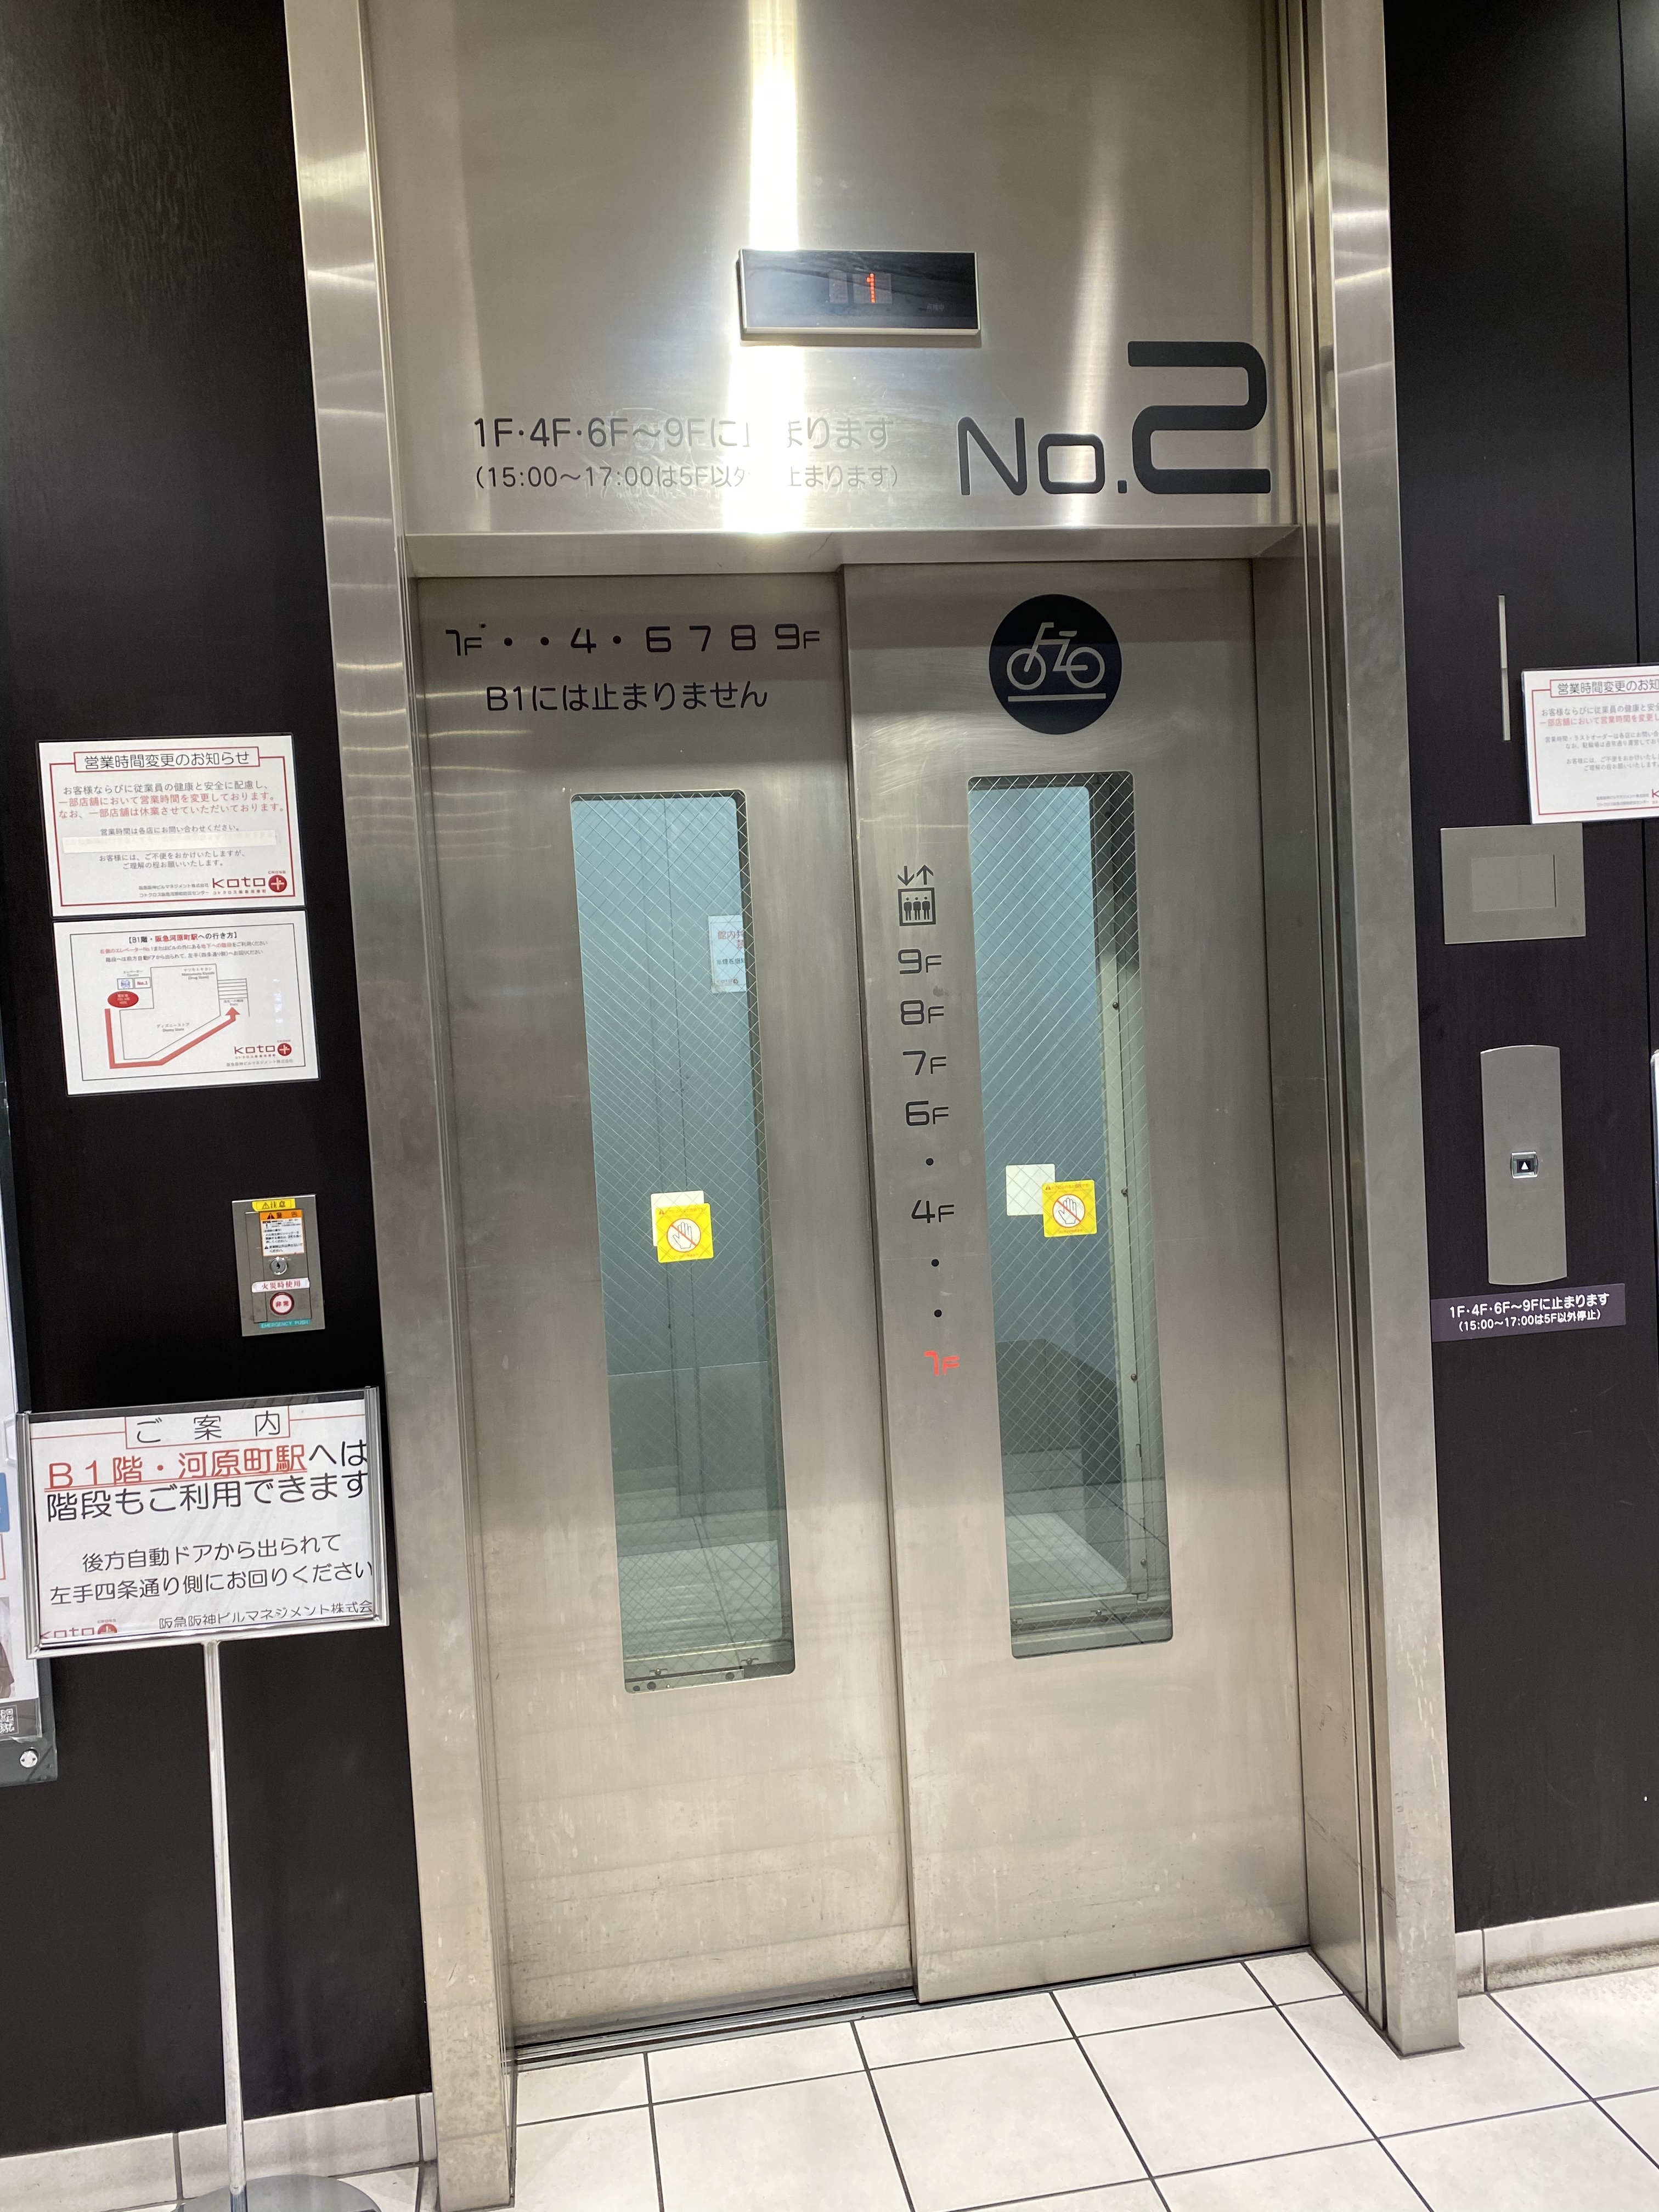 搭二號電梯去 9 樓